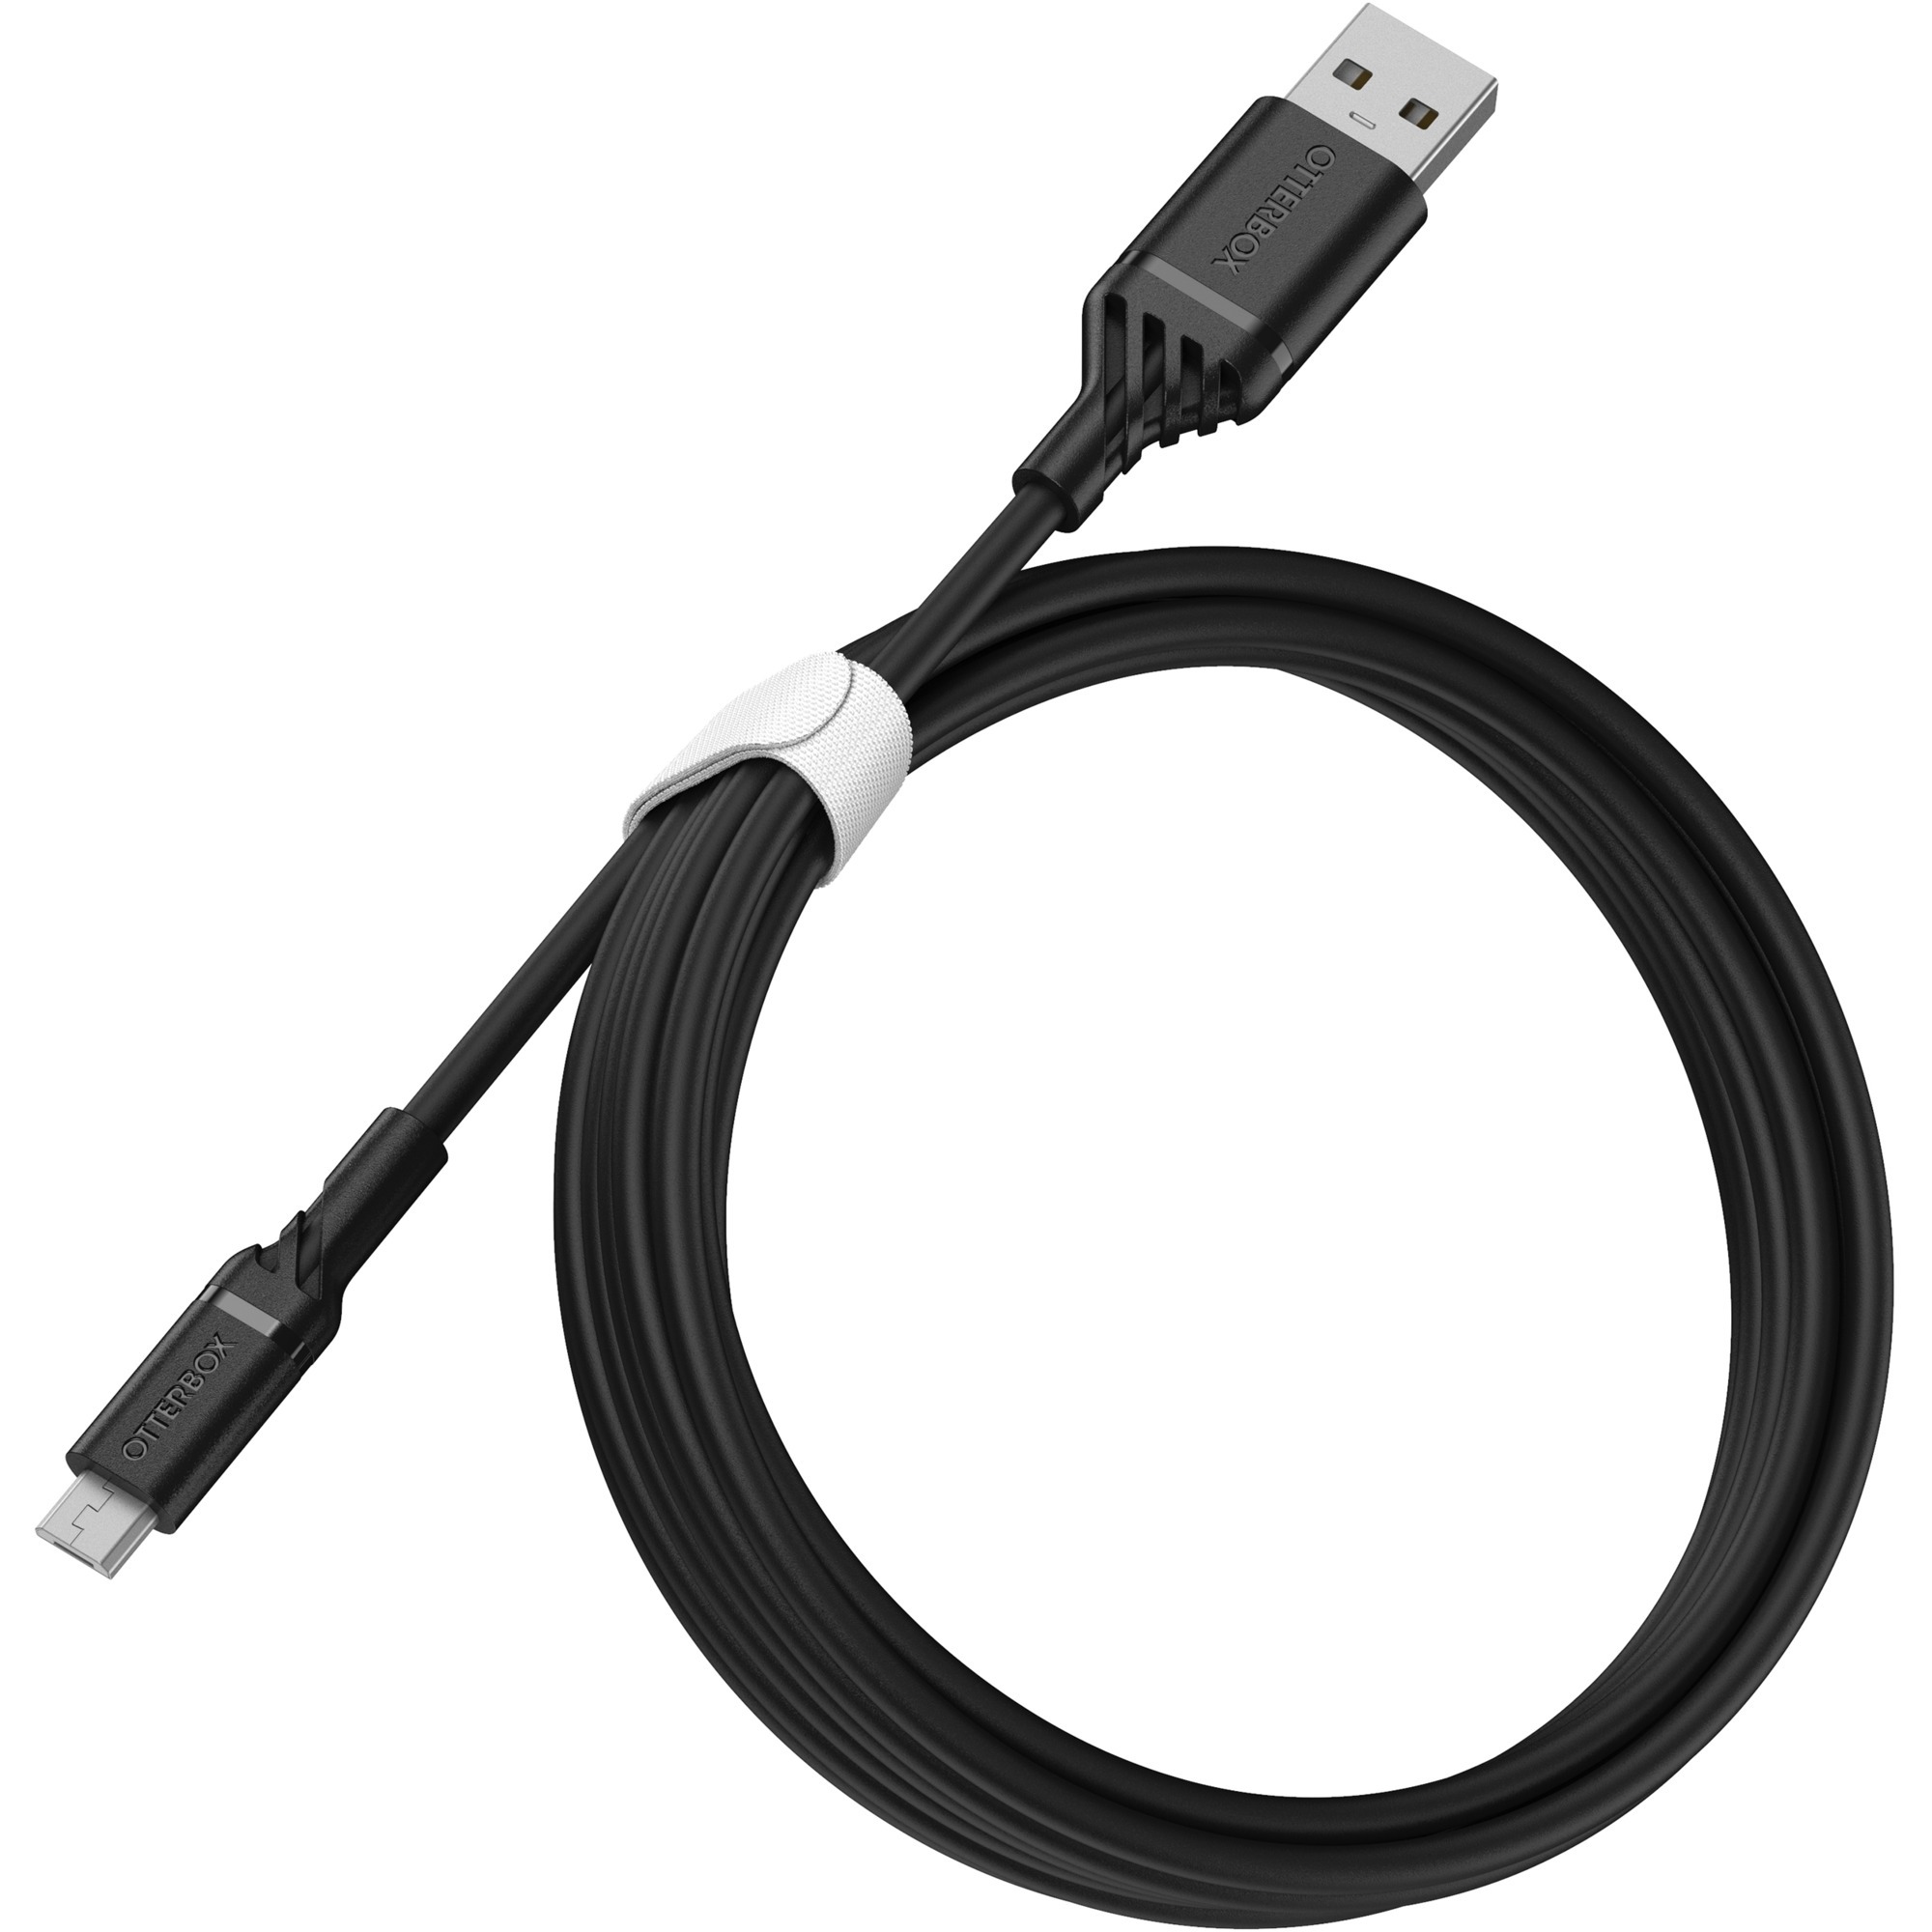 Image of Alternate - Ladekabel USB A > Micro USB, 2 Meter online einkaufen bei Alternate